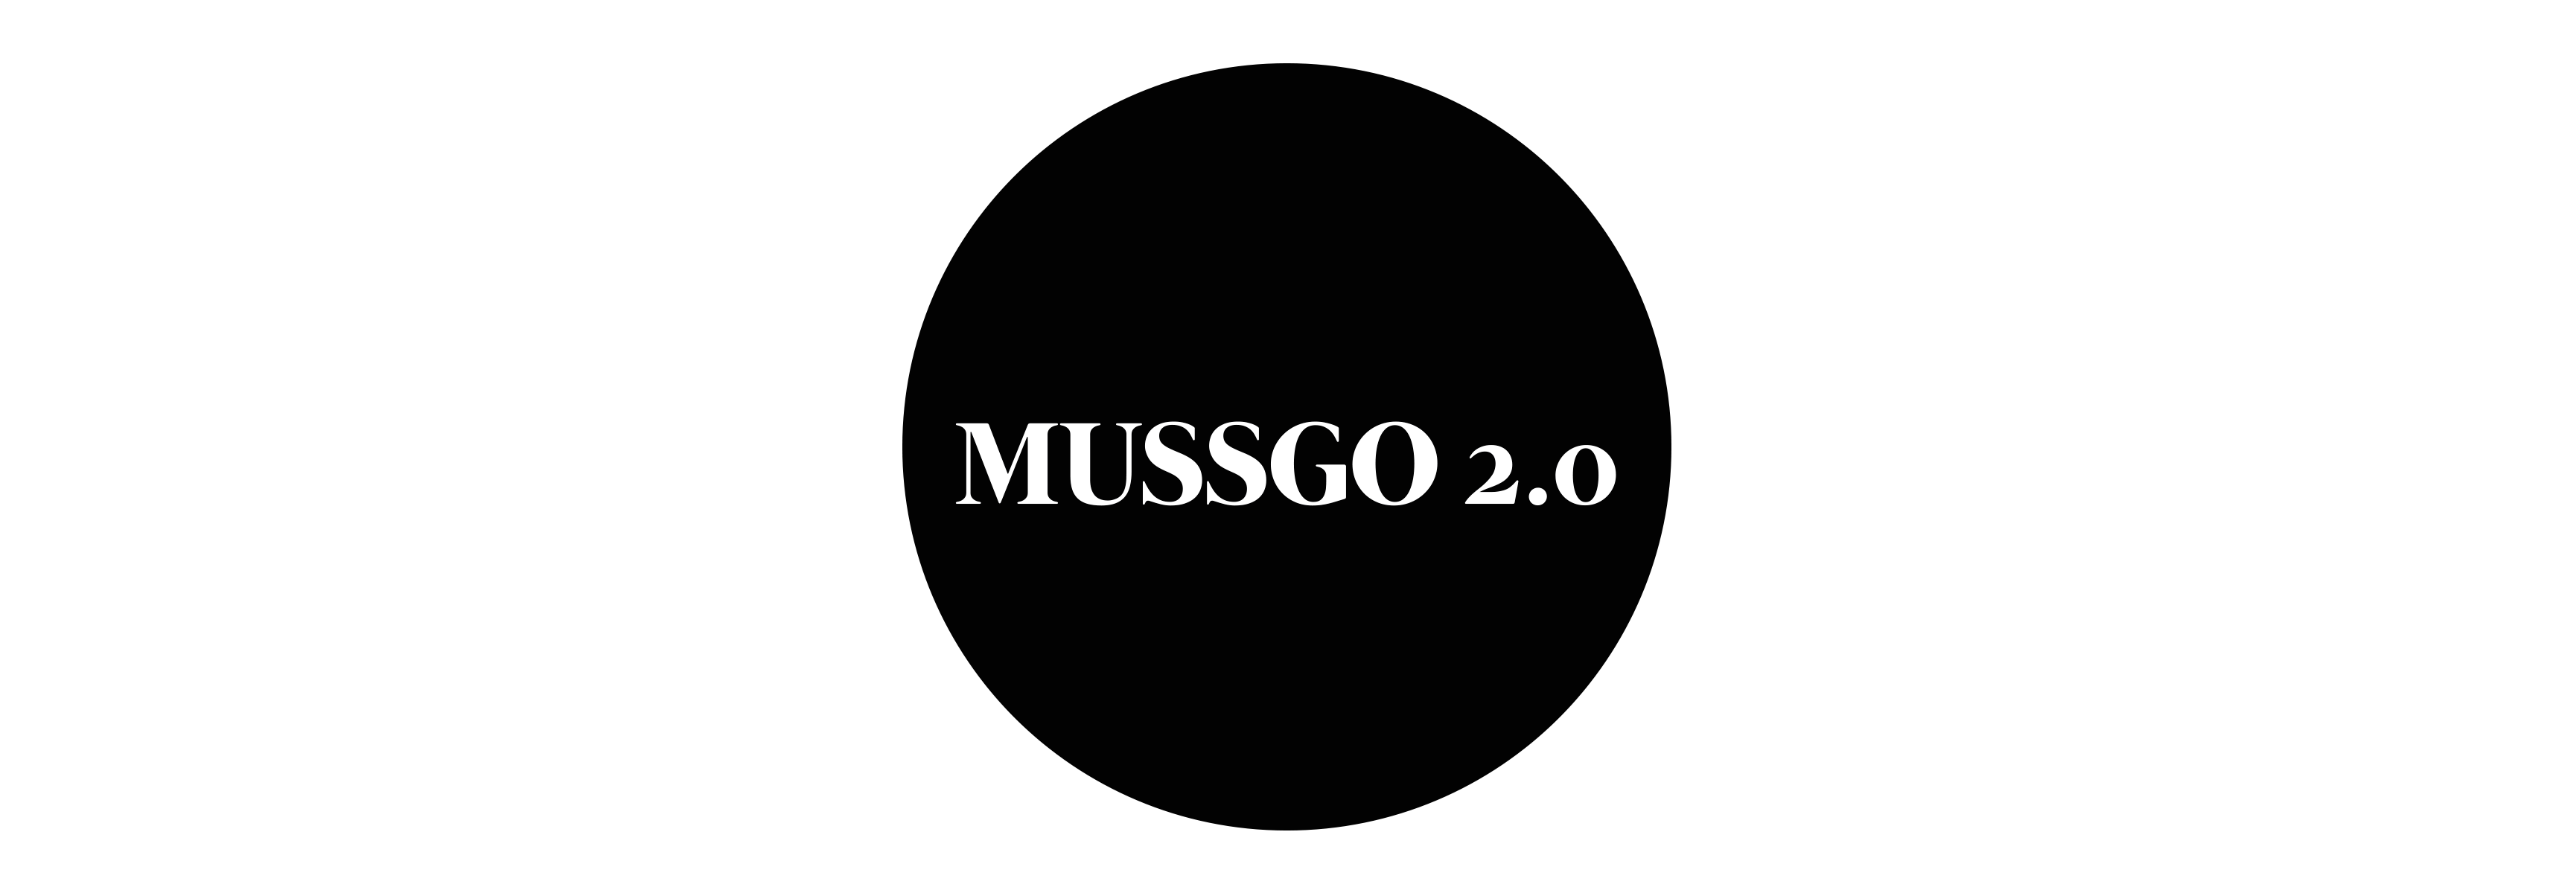 Mussgo 2.0 logo